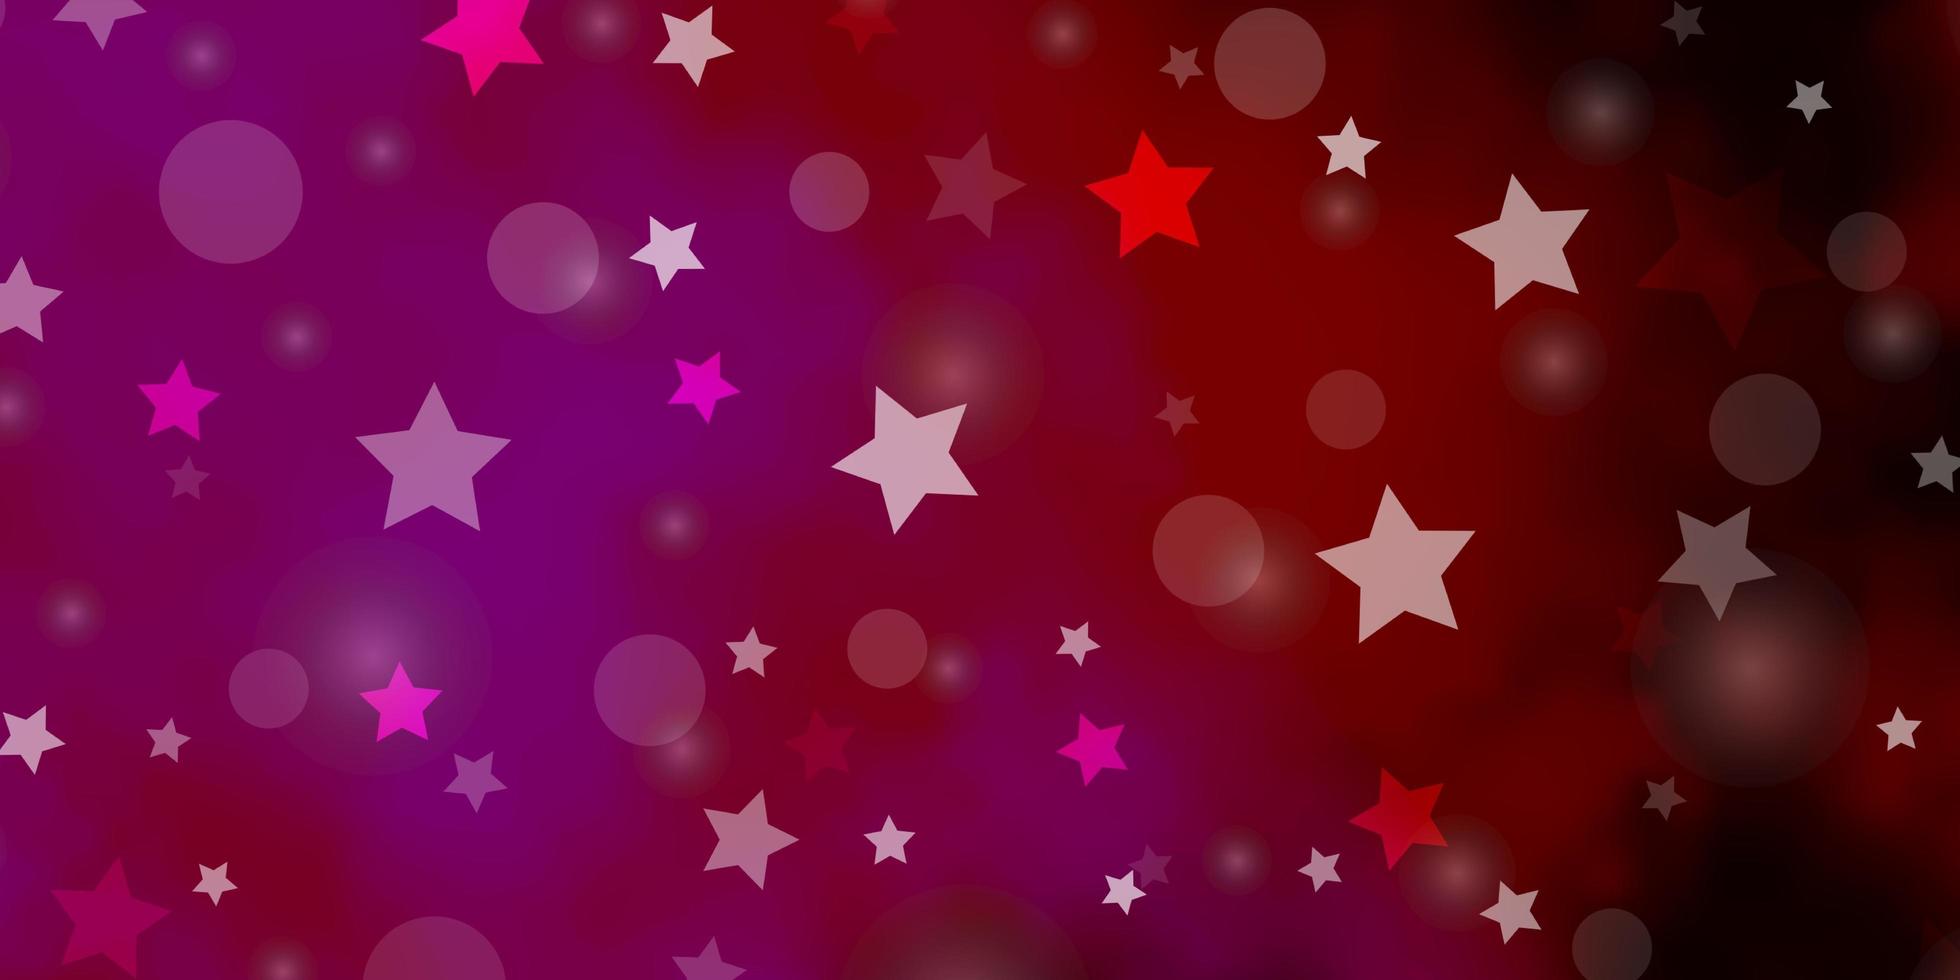 motivo vettoriale rosa viola scuro con cerchi stelle disegno astratto in stile sfumato con bolle stelle design per sfondi in tessuto textile